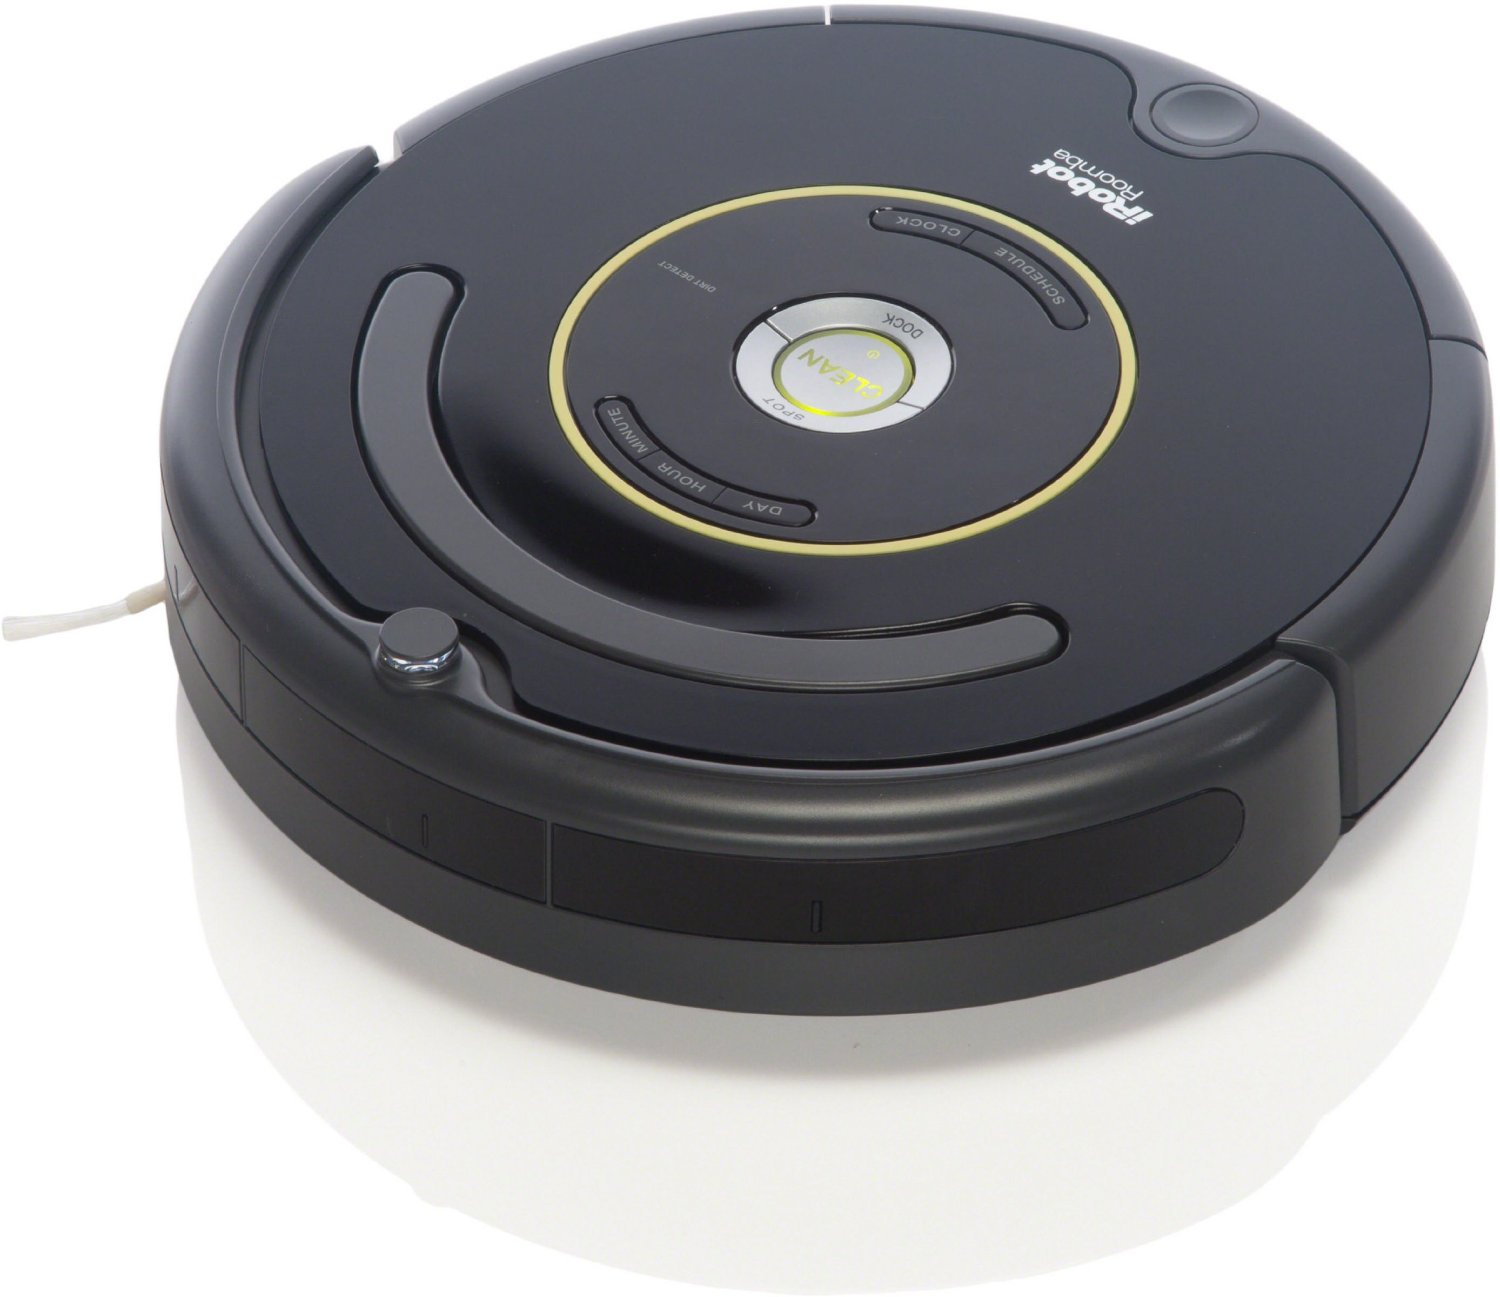 Top 10 Robot Vacuums 2016 - iRobot Roomba 650